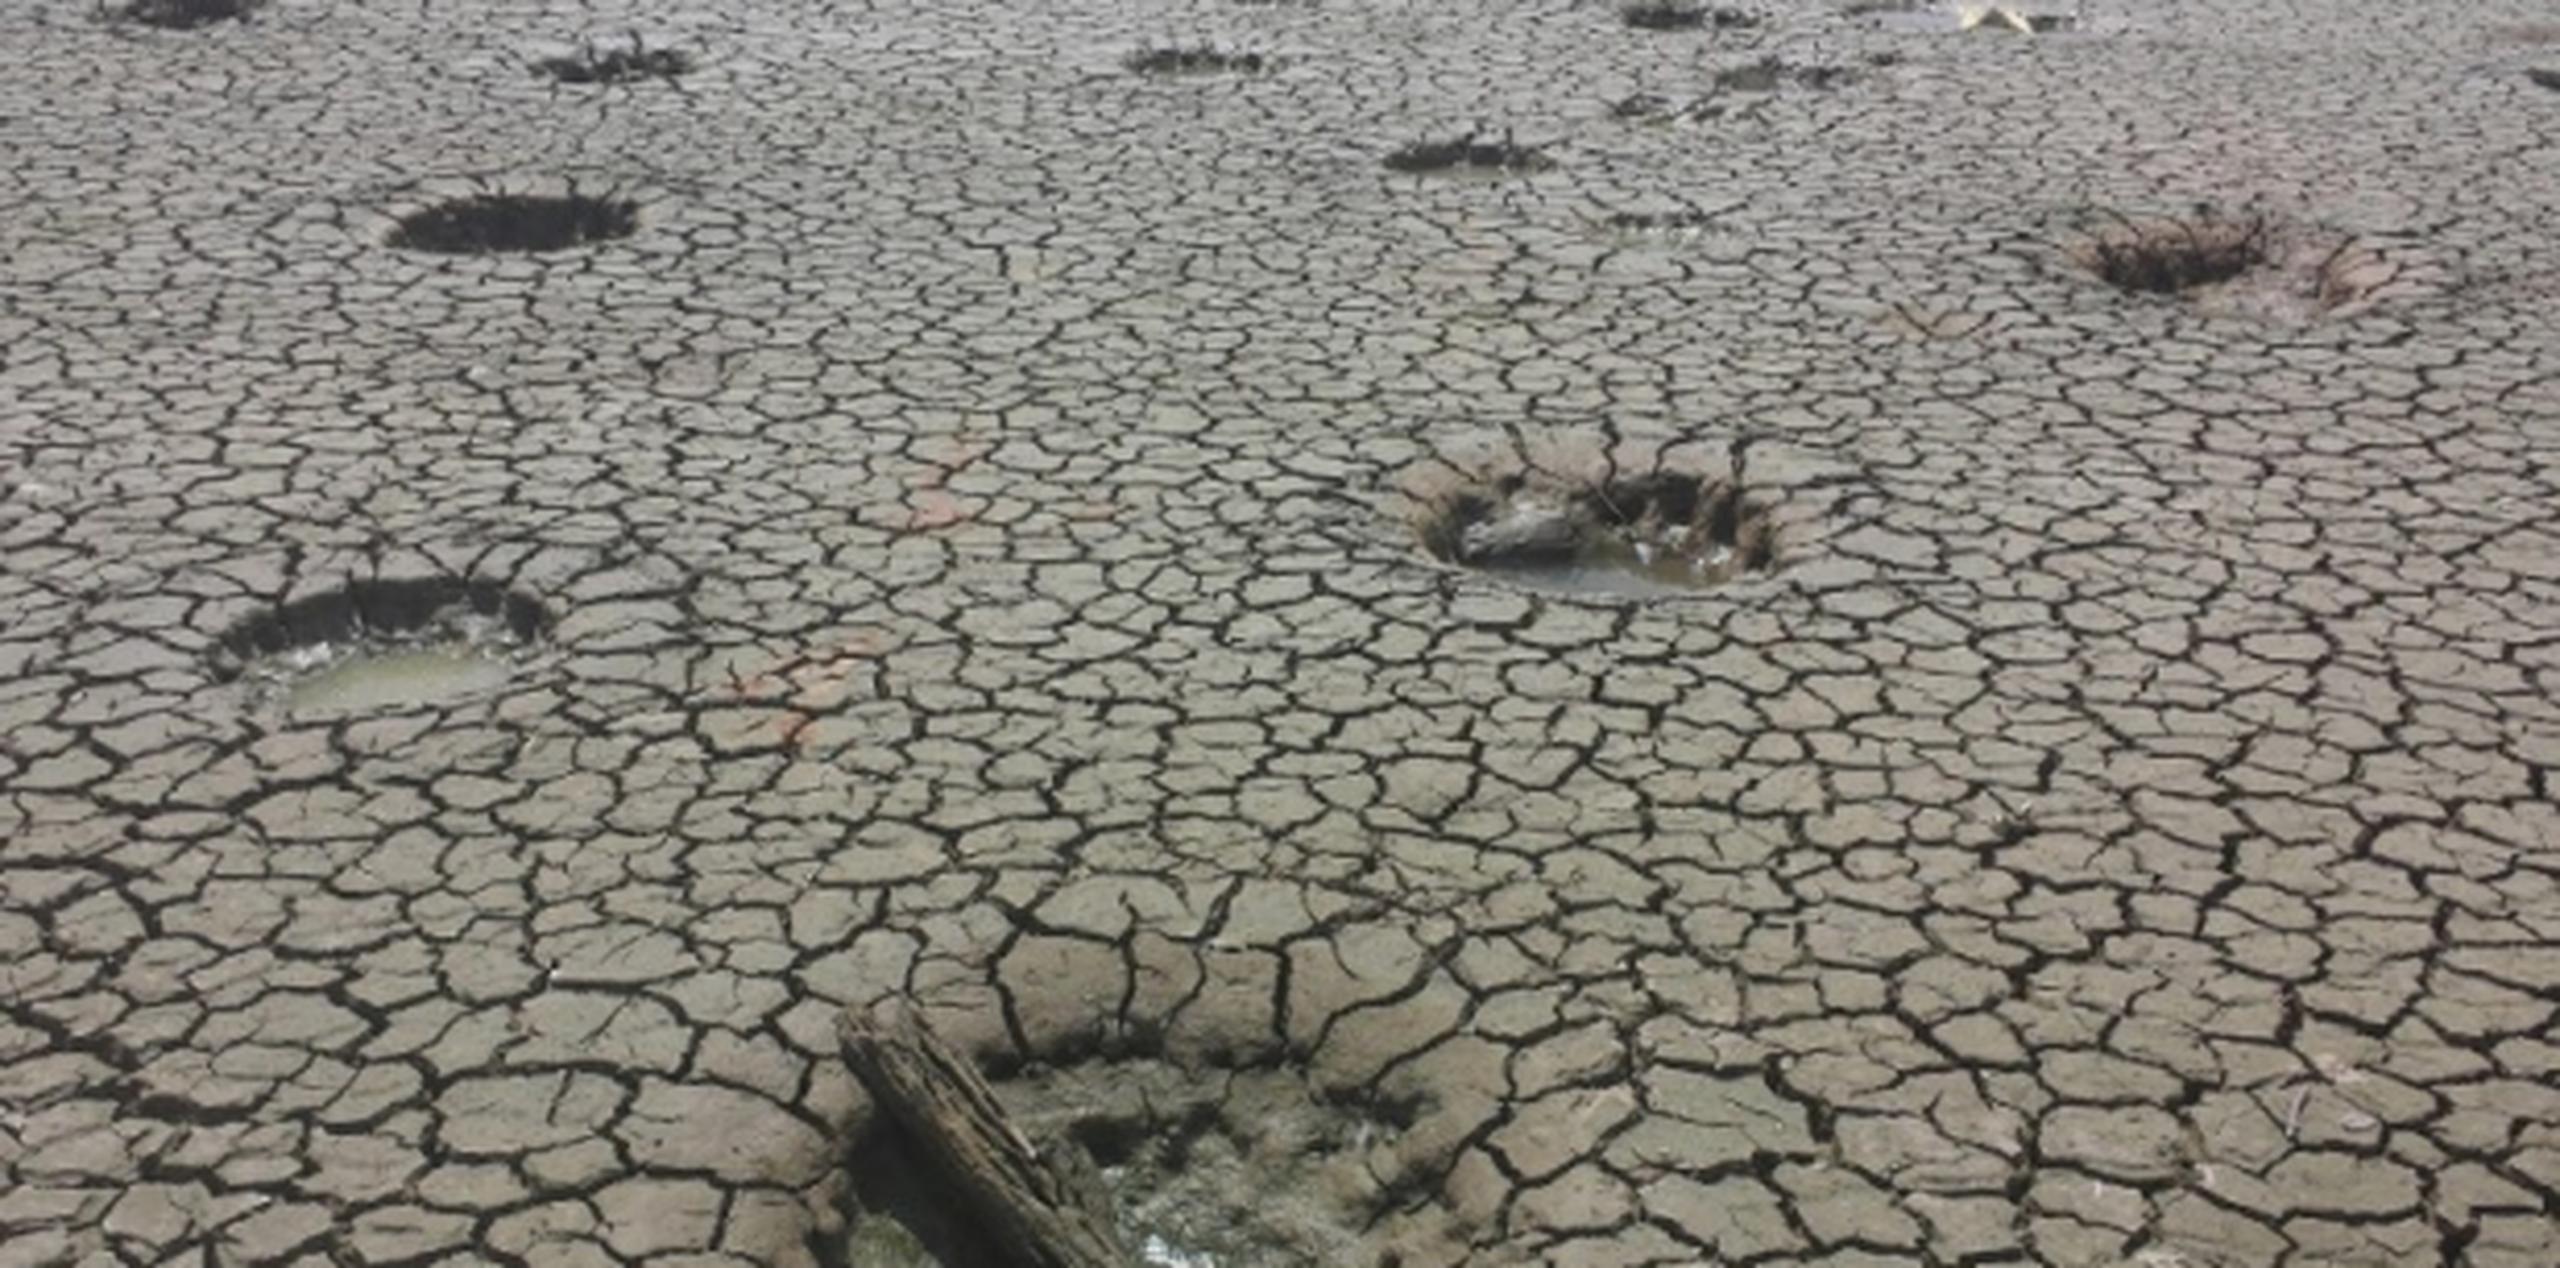 Actualmente, unos 20 pueblos de la Isla están clasificados por el Monitor federal en sequía extrema. (Archivo)